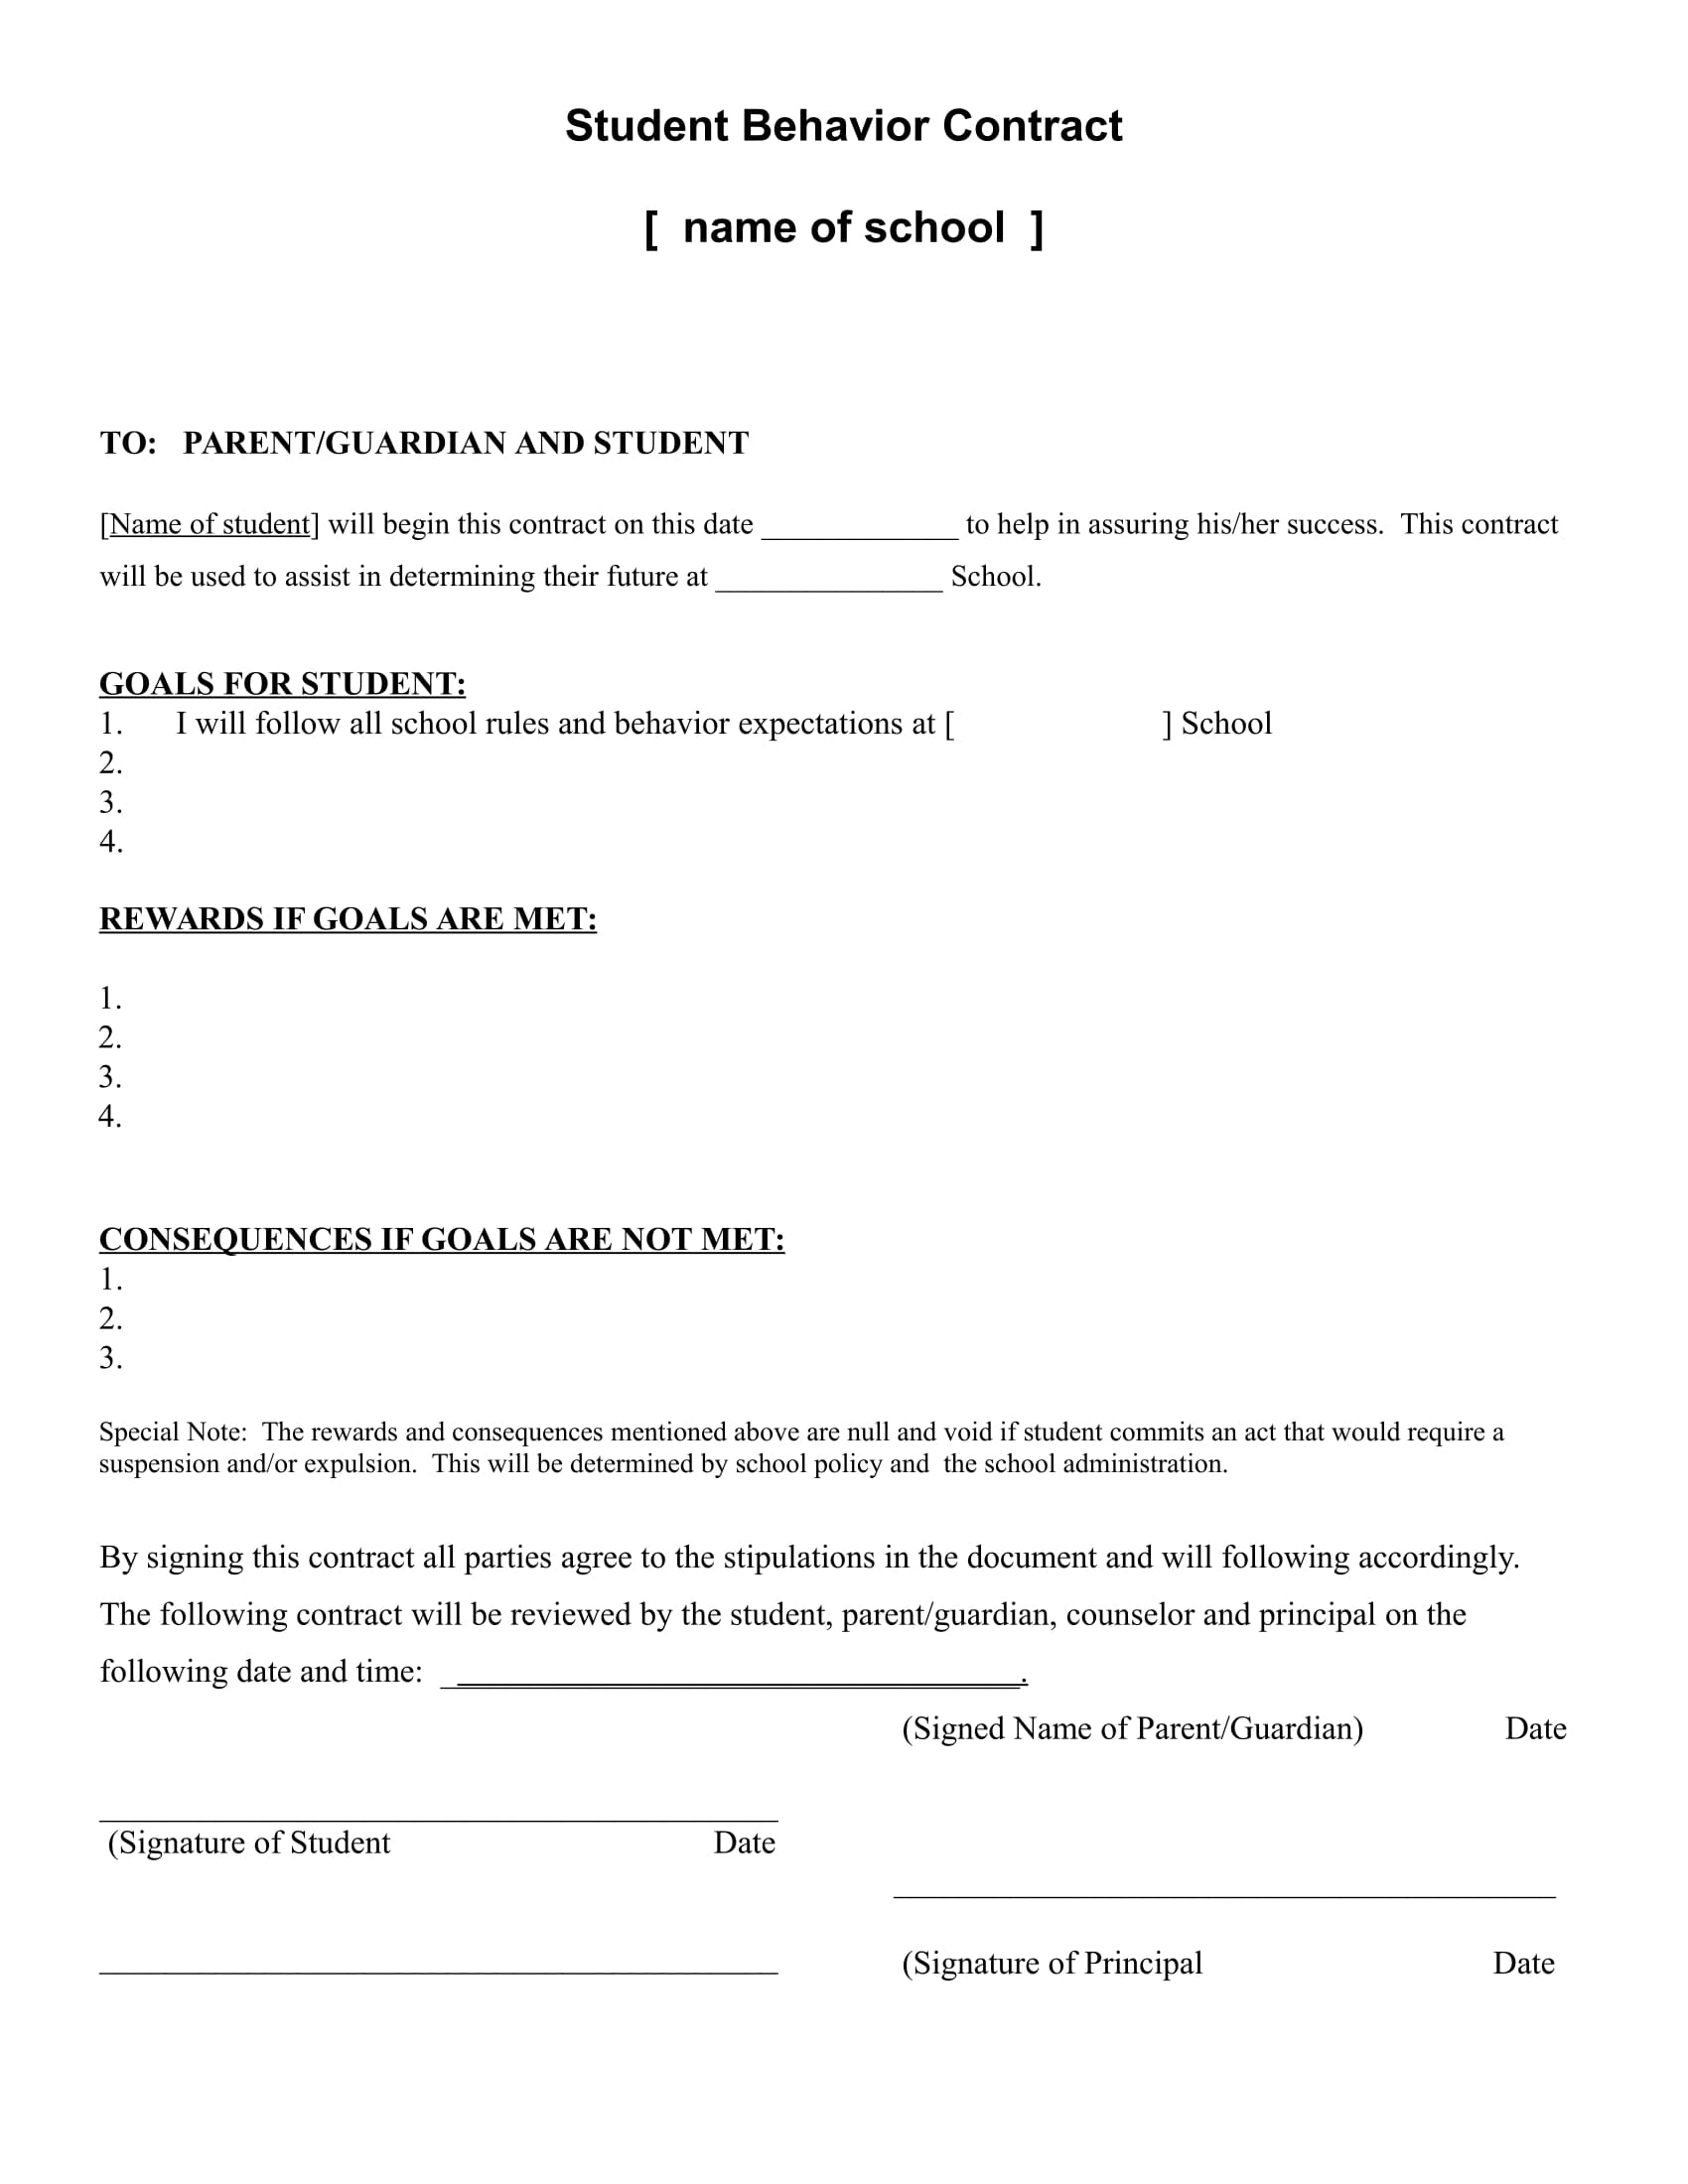 student behavior contract example